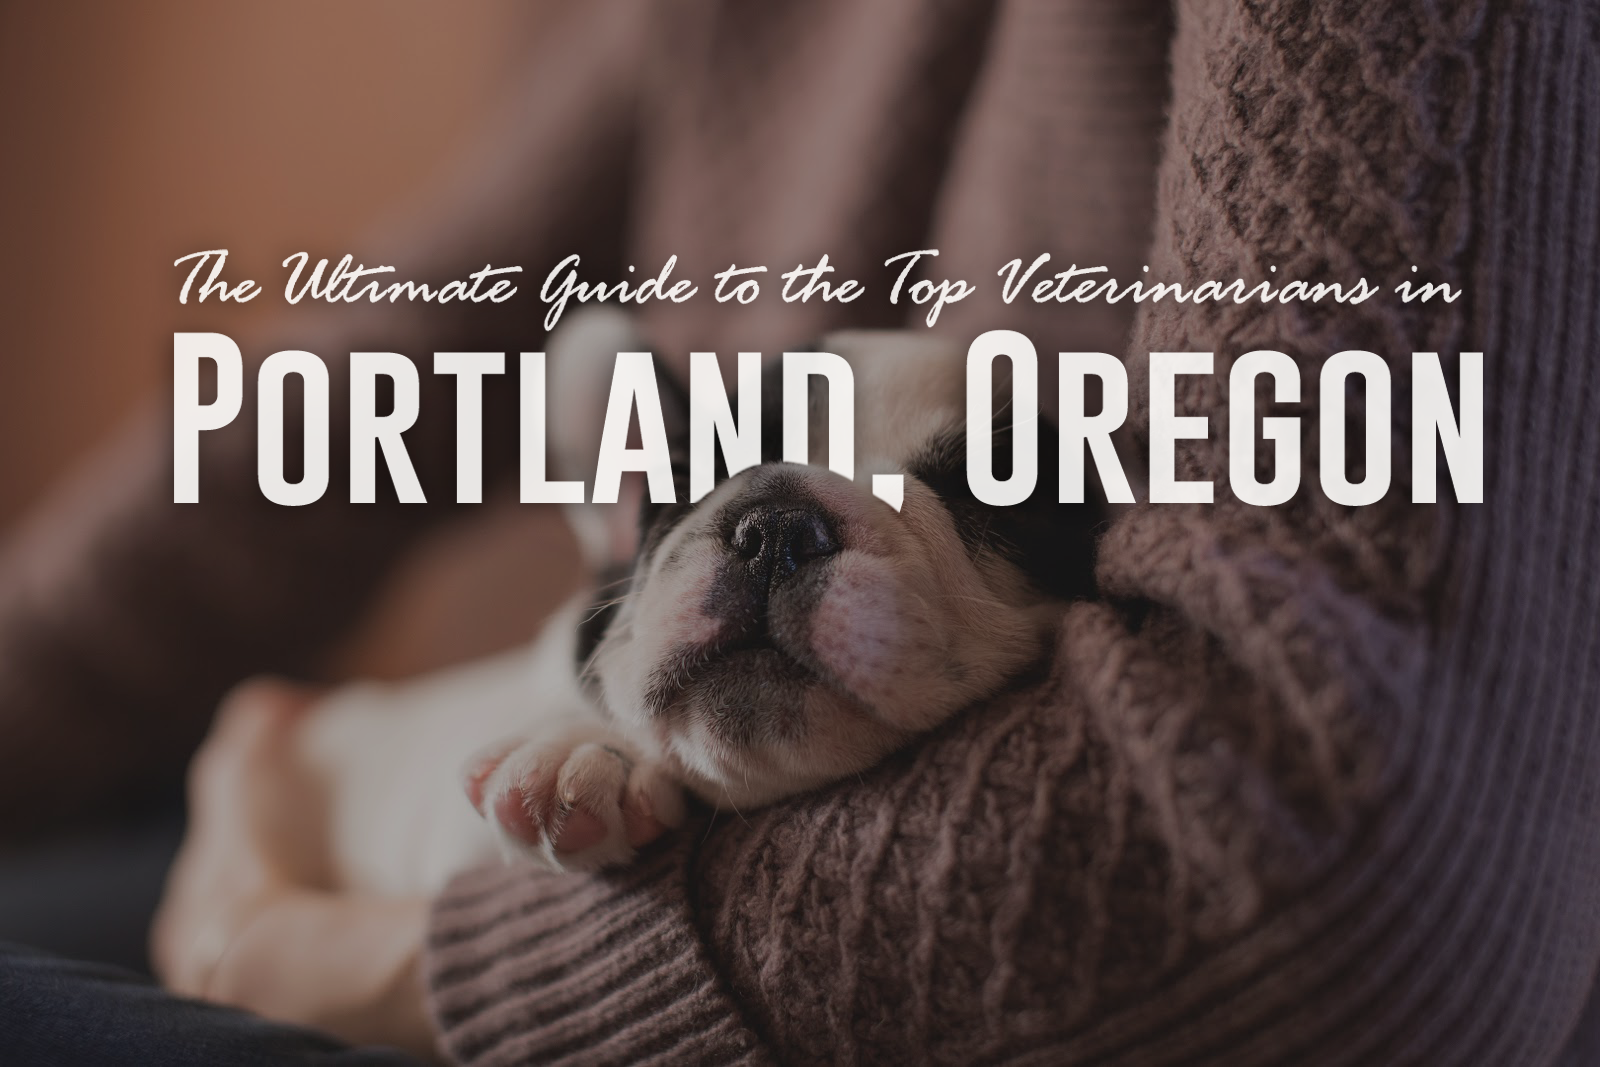 Den ultimata guiden till de bästa veterinärerna i Portland, Oregon